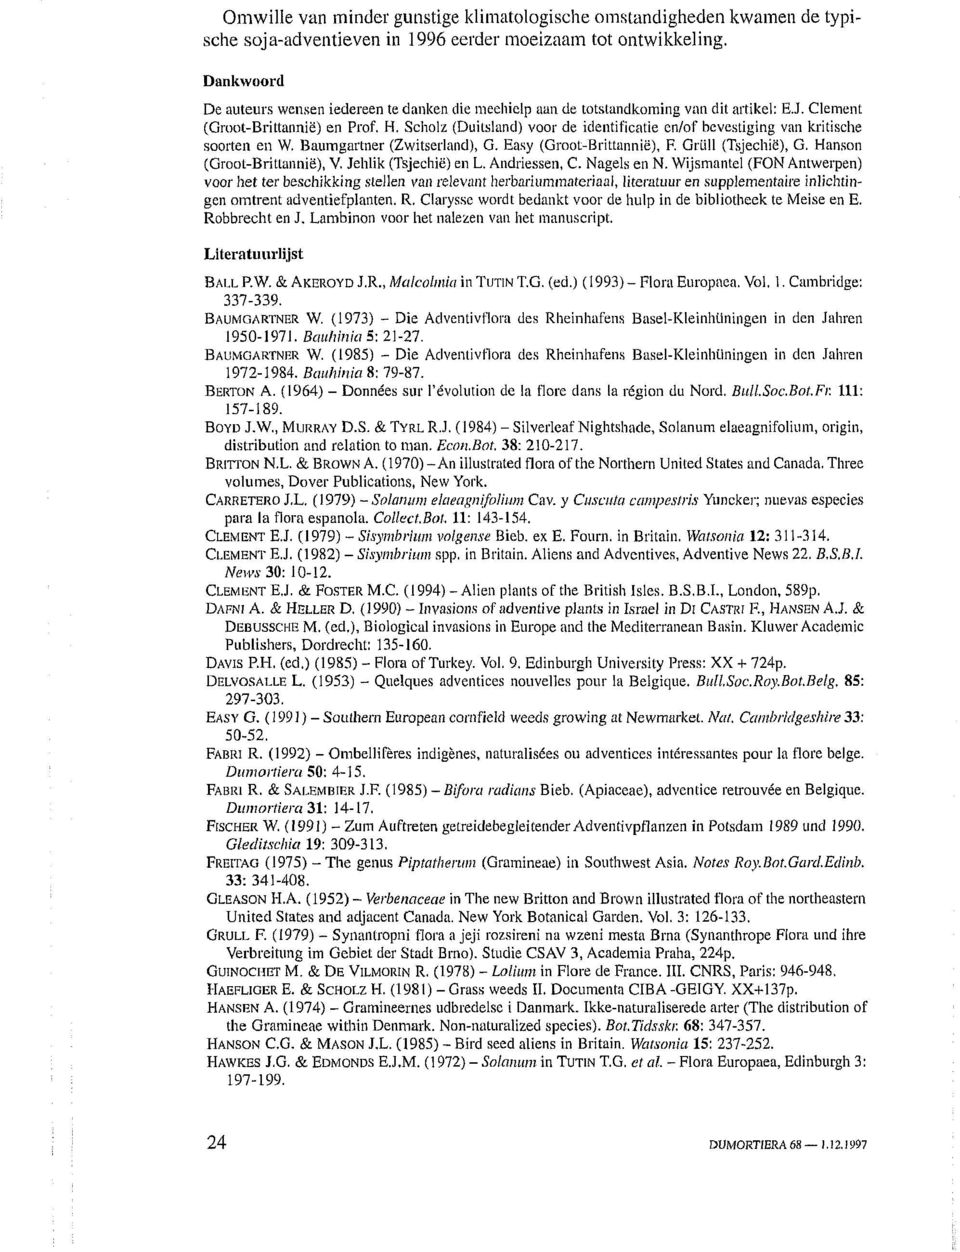 Scholz (Duitsland) voor de identificatie en/of bevestiging van kritische soorten en W. Baumgartner (Zwitserland), G. Easy (Groot-Brittannië), F. Grtill (Tsjechië), G. Hanson (Groot-Brittannië), V.